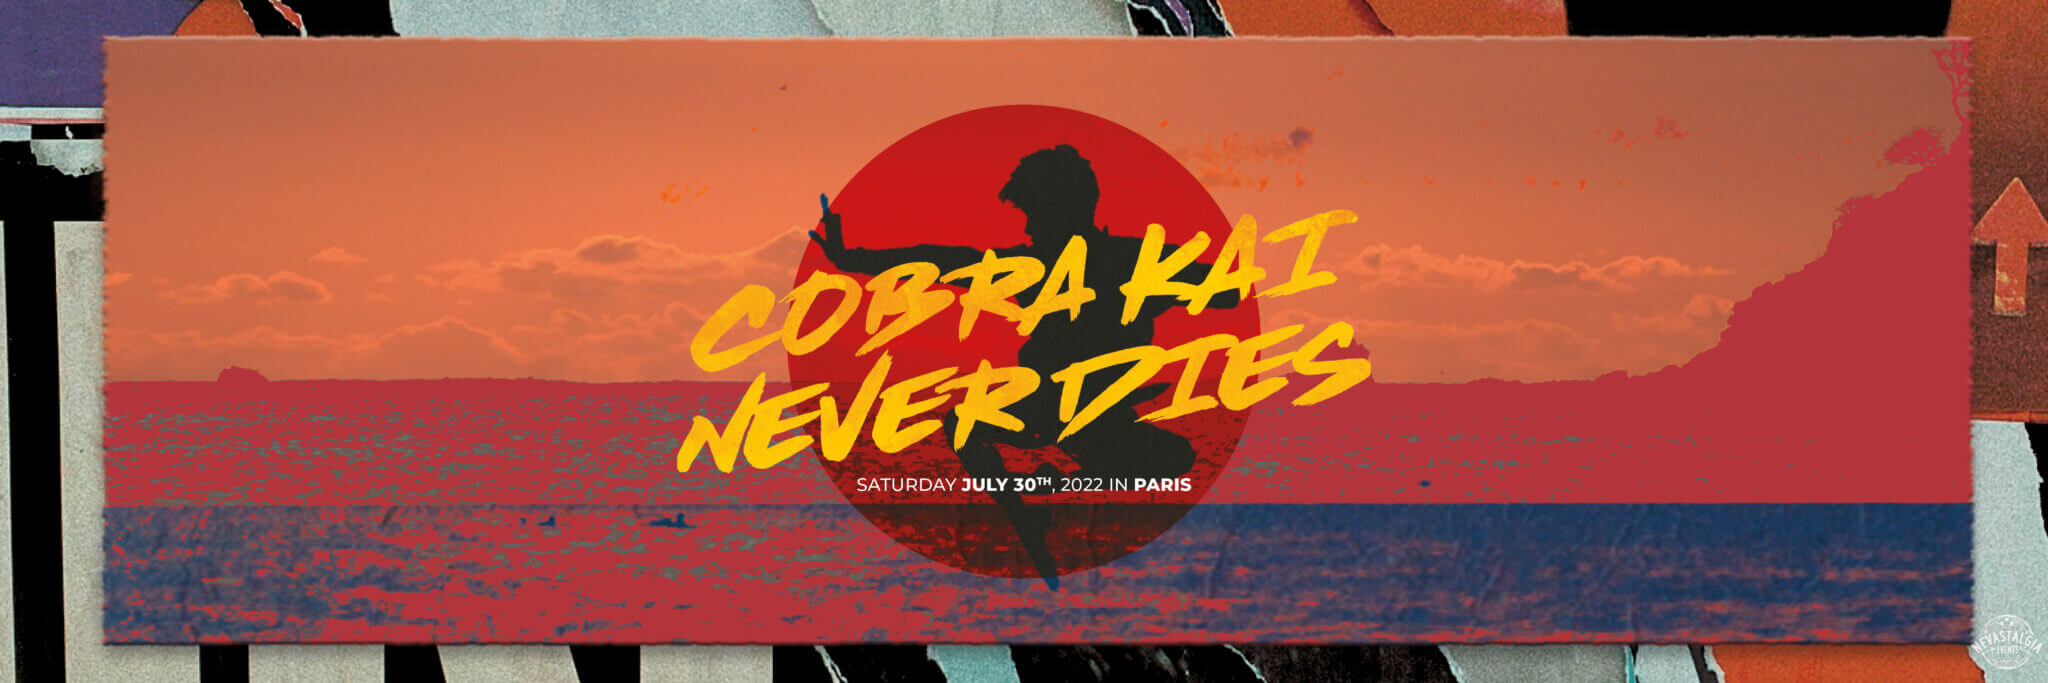 Saison 4 Cobra Kai : Les acteurs bientôt à Paris